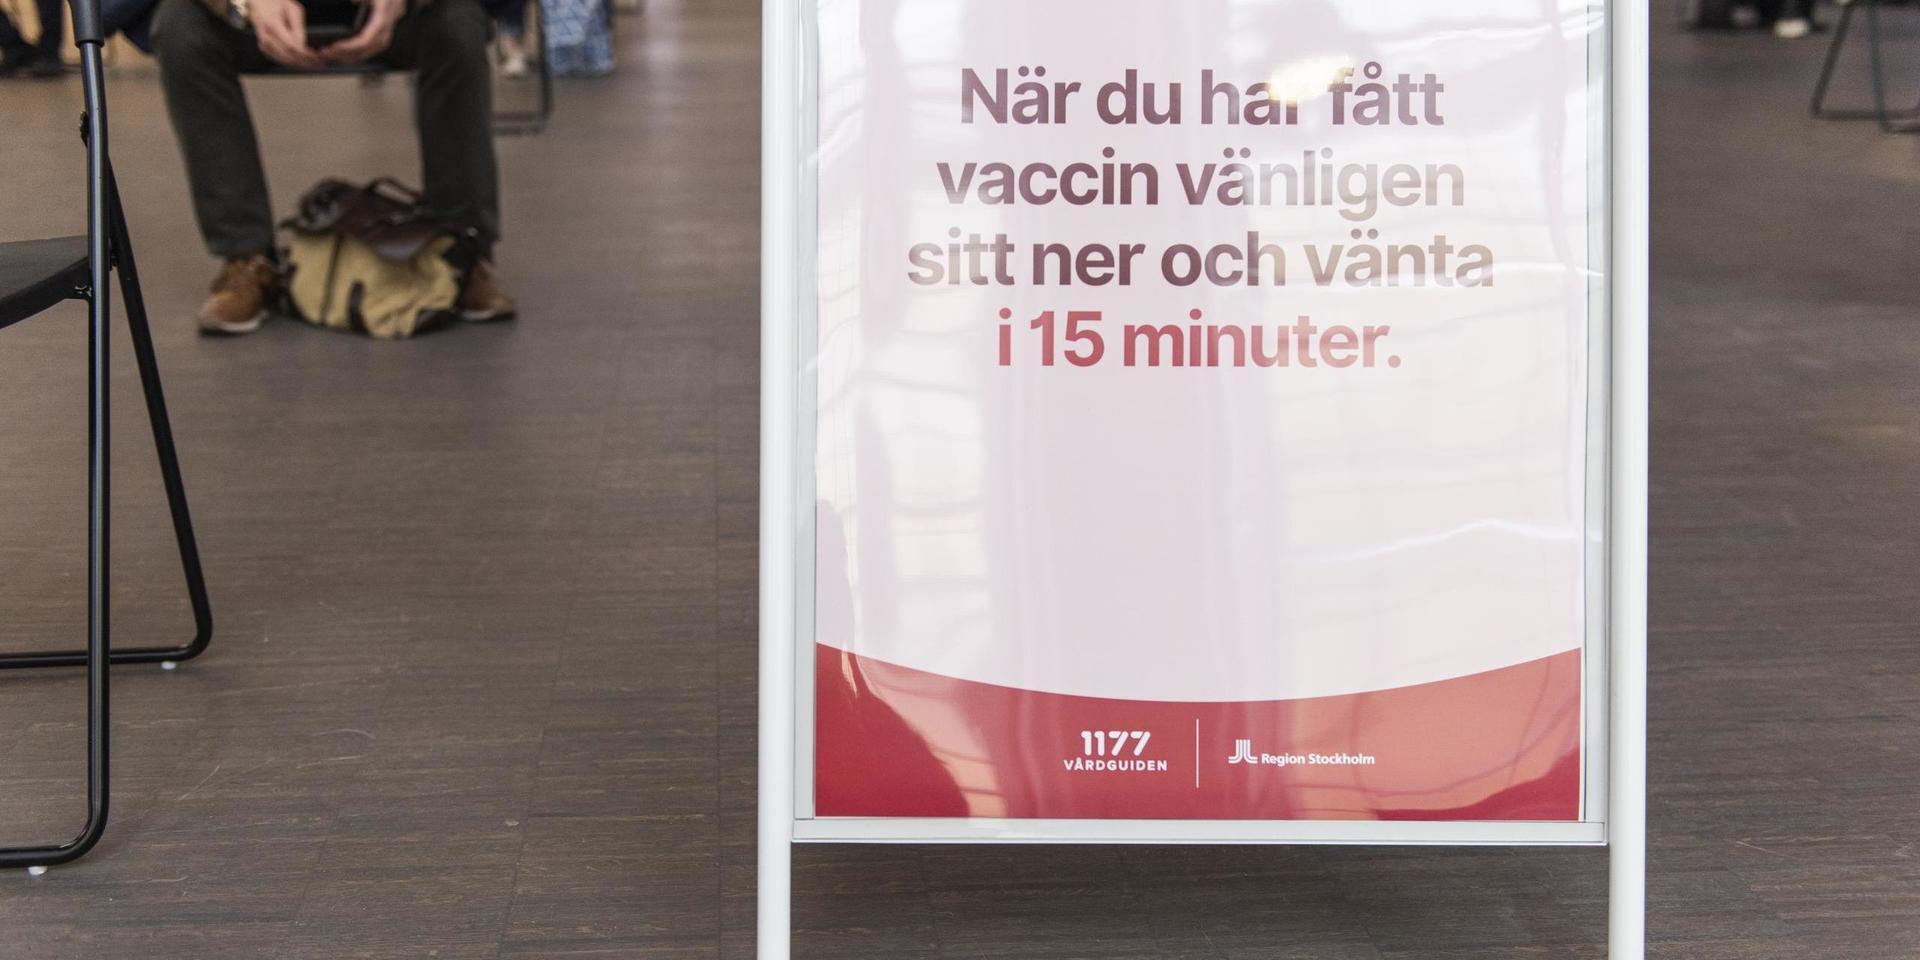 Insändaren undrar hur Västra Götaland kan ligga så långt efter andra regioner med vaccineringen mot covid-19.